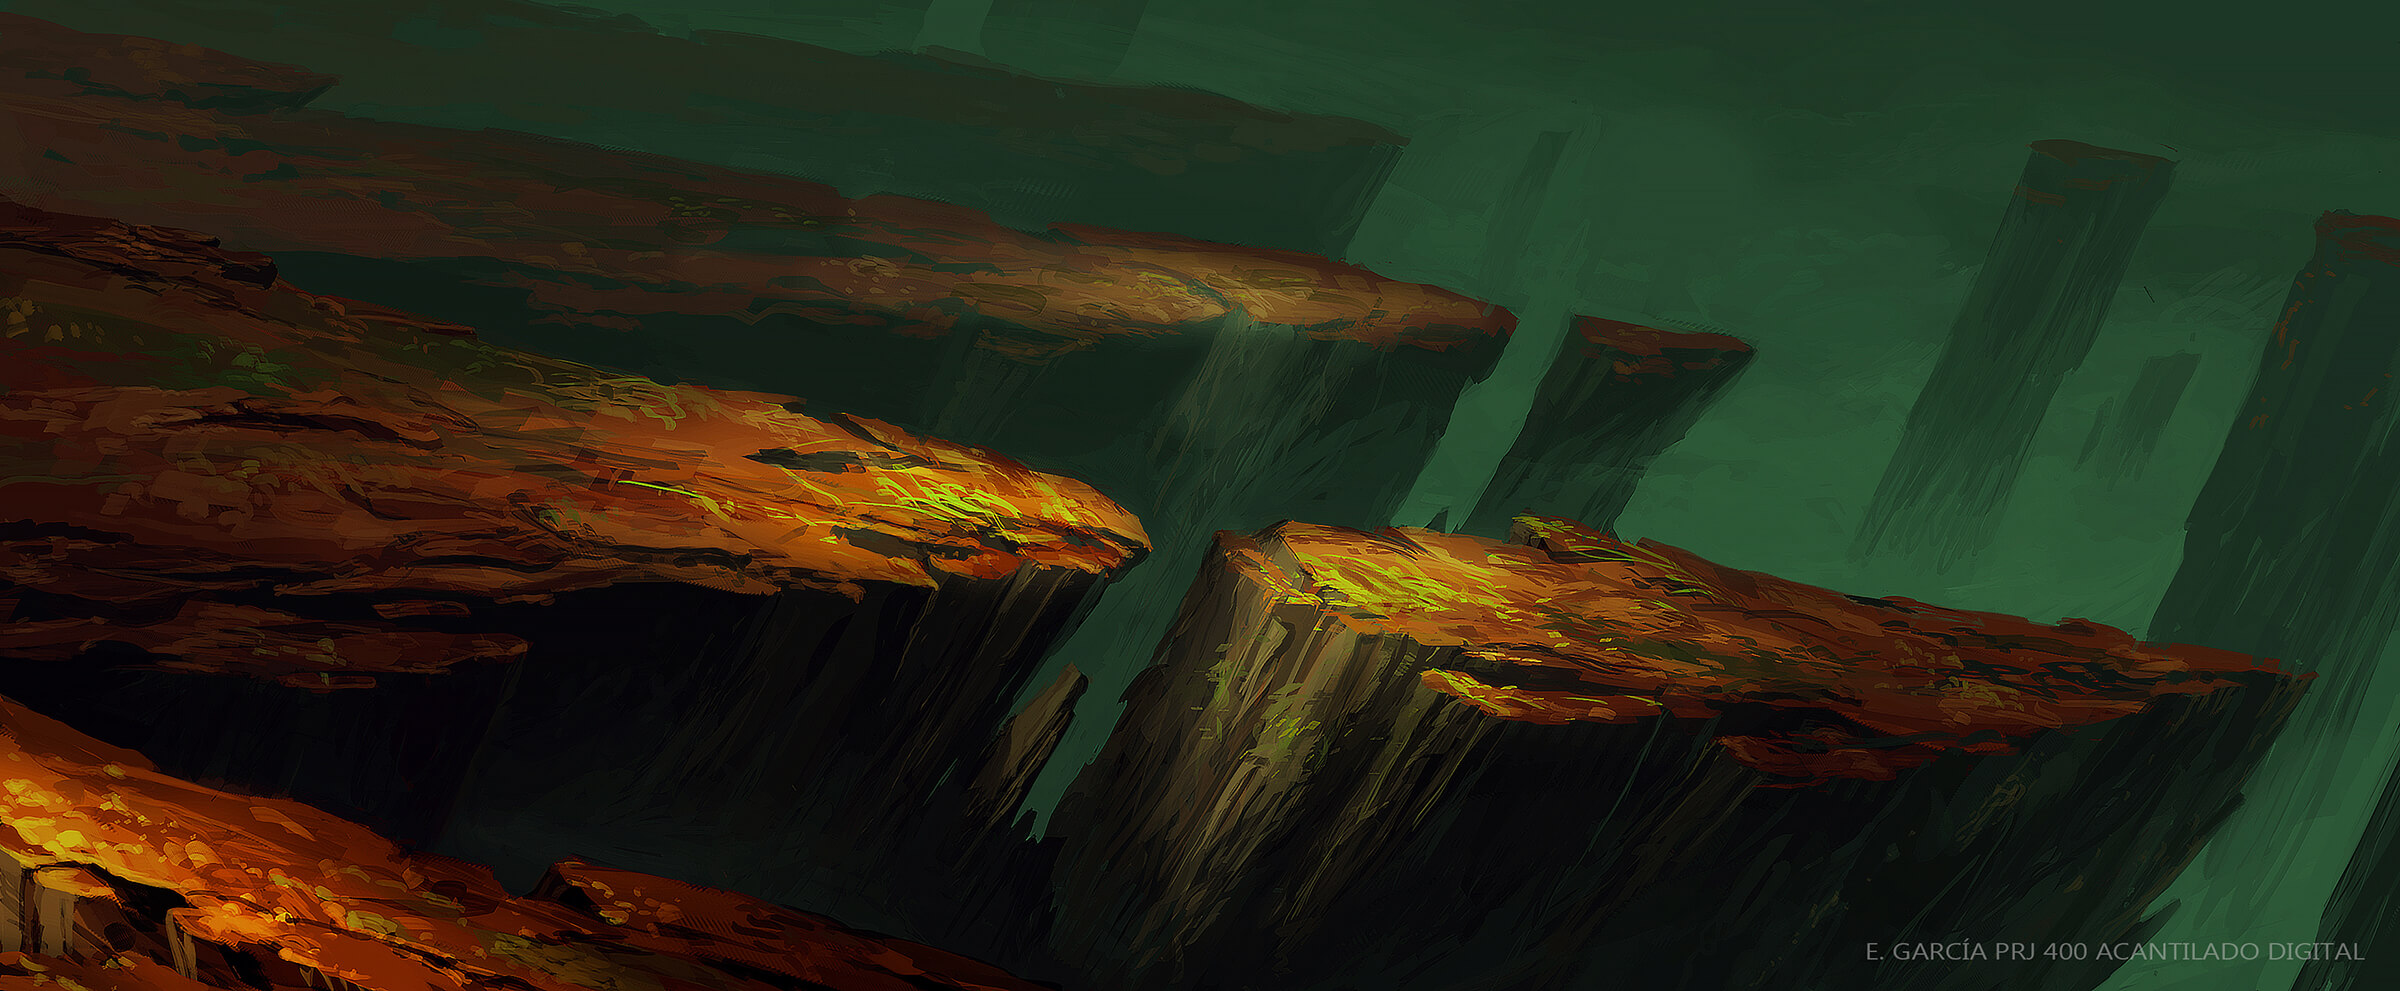 Escarpados acantilados rojos en un paisaje extraño se adentran siniestramente en un cielo verde oscuro.